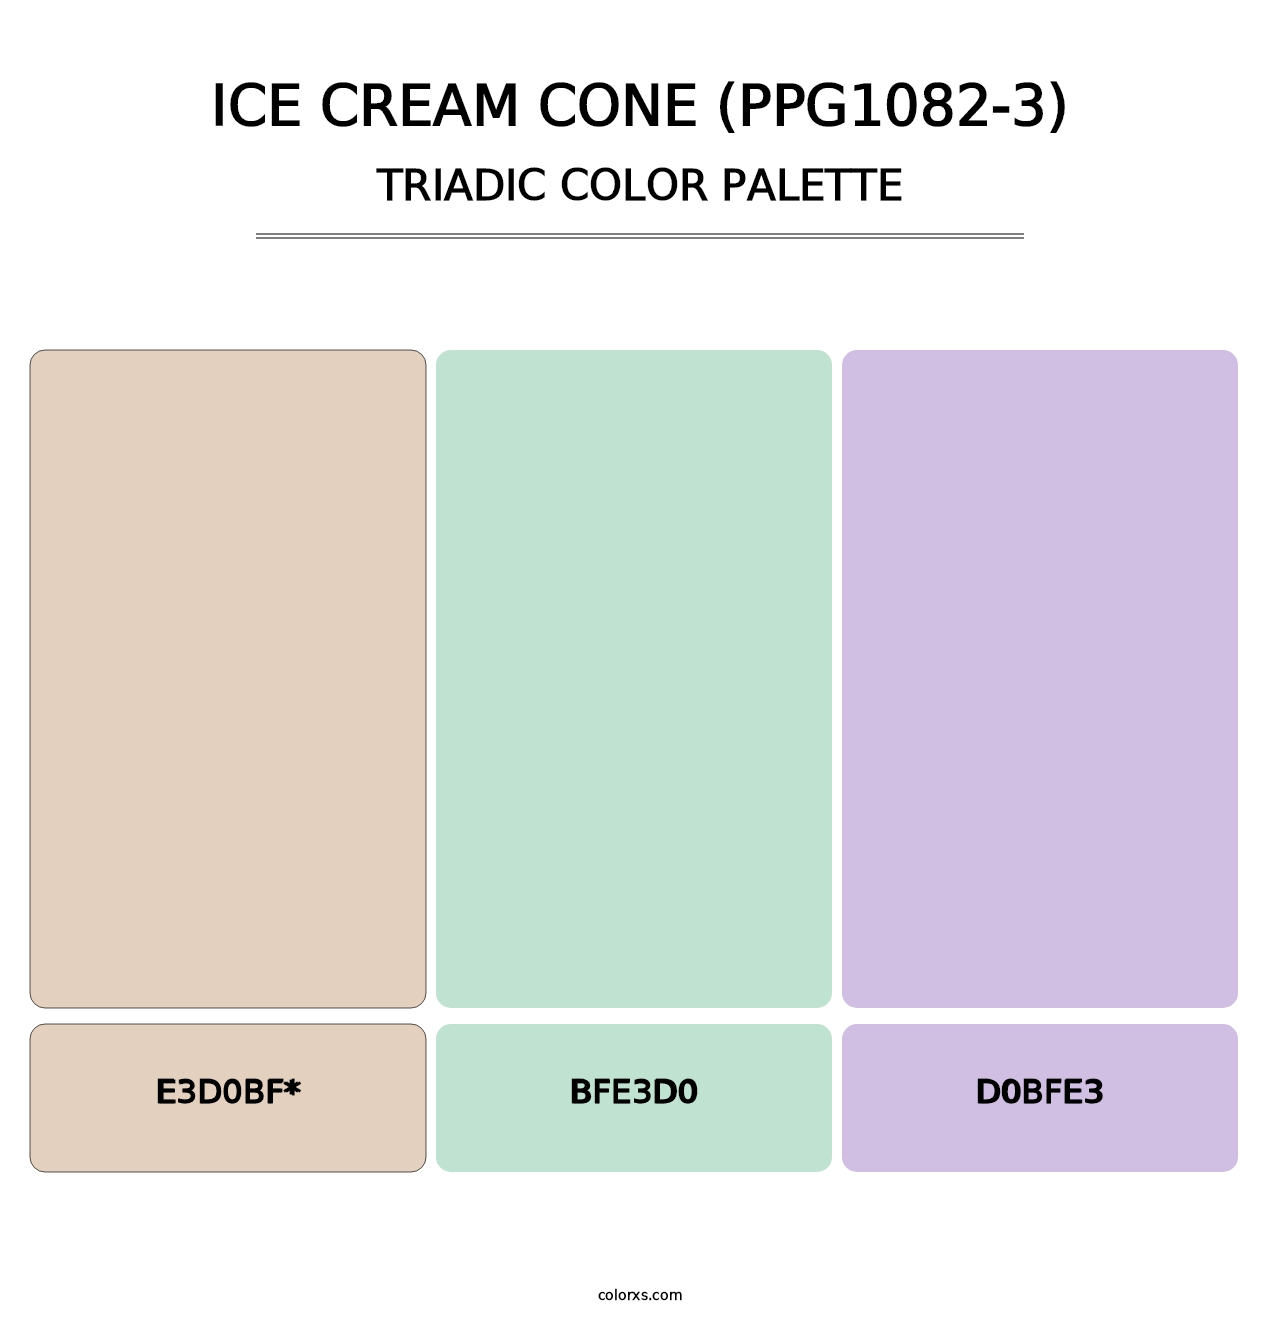 Ice Cream Cone (PPG1082-3) - Triadic Color Palette